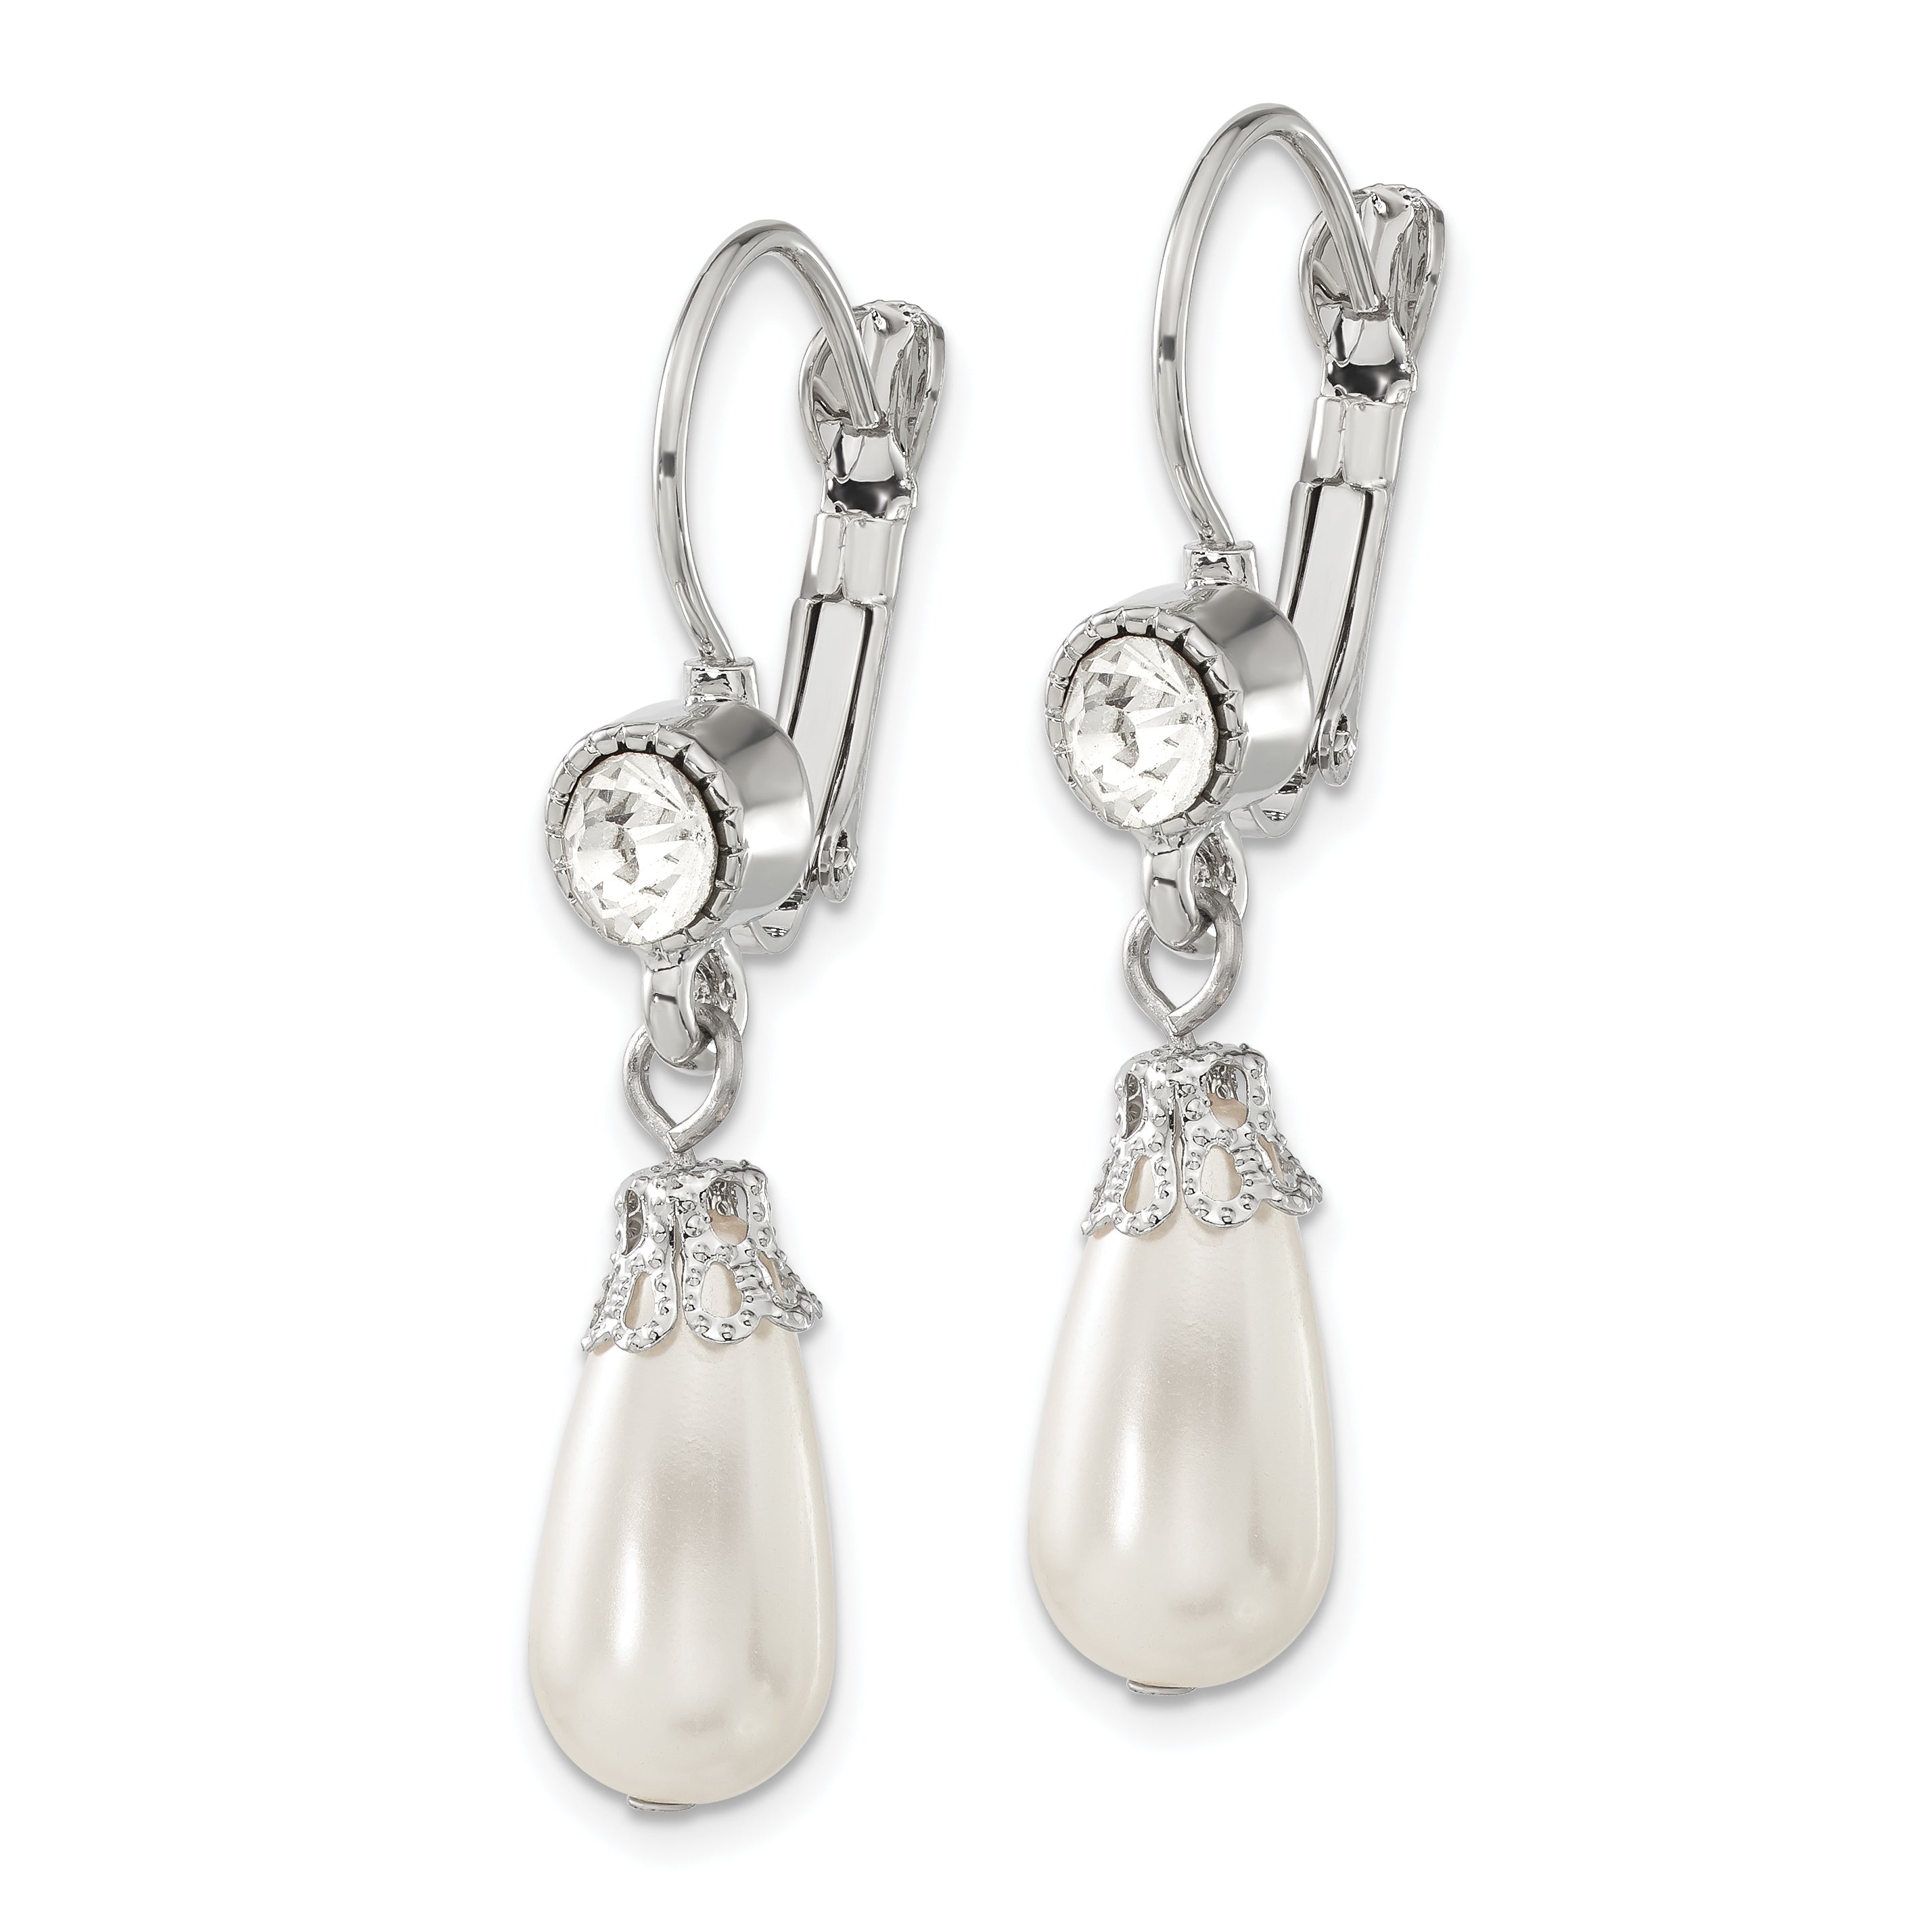 1928 Jewelry Silver-tone Clear Crystal Imitation Pearl Teardrop Dangle Leverback Earrings